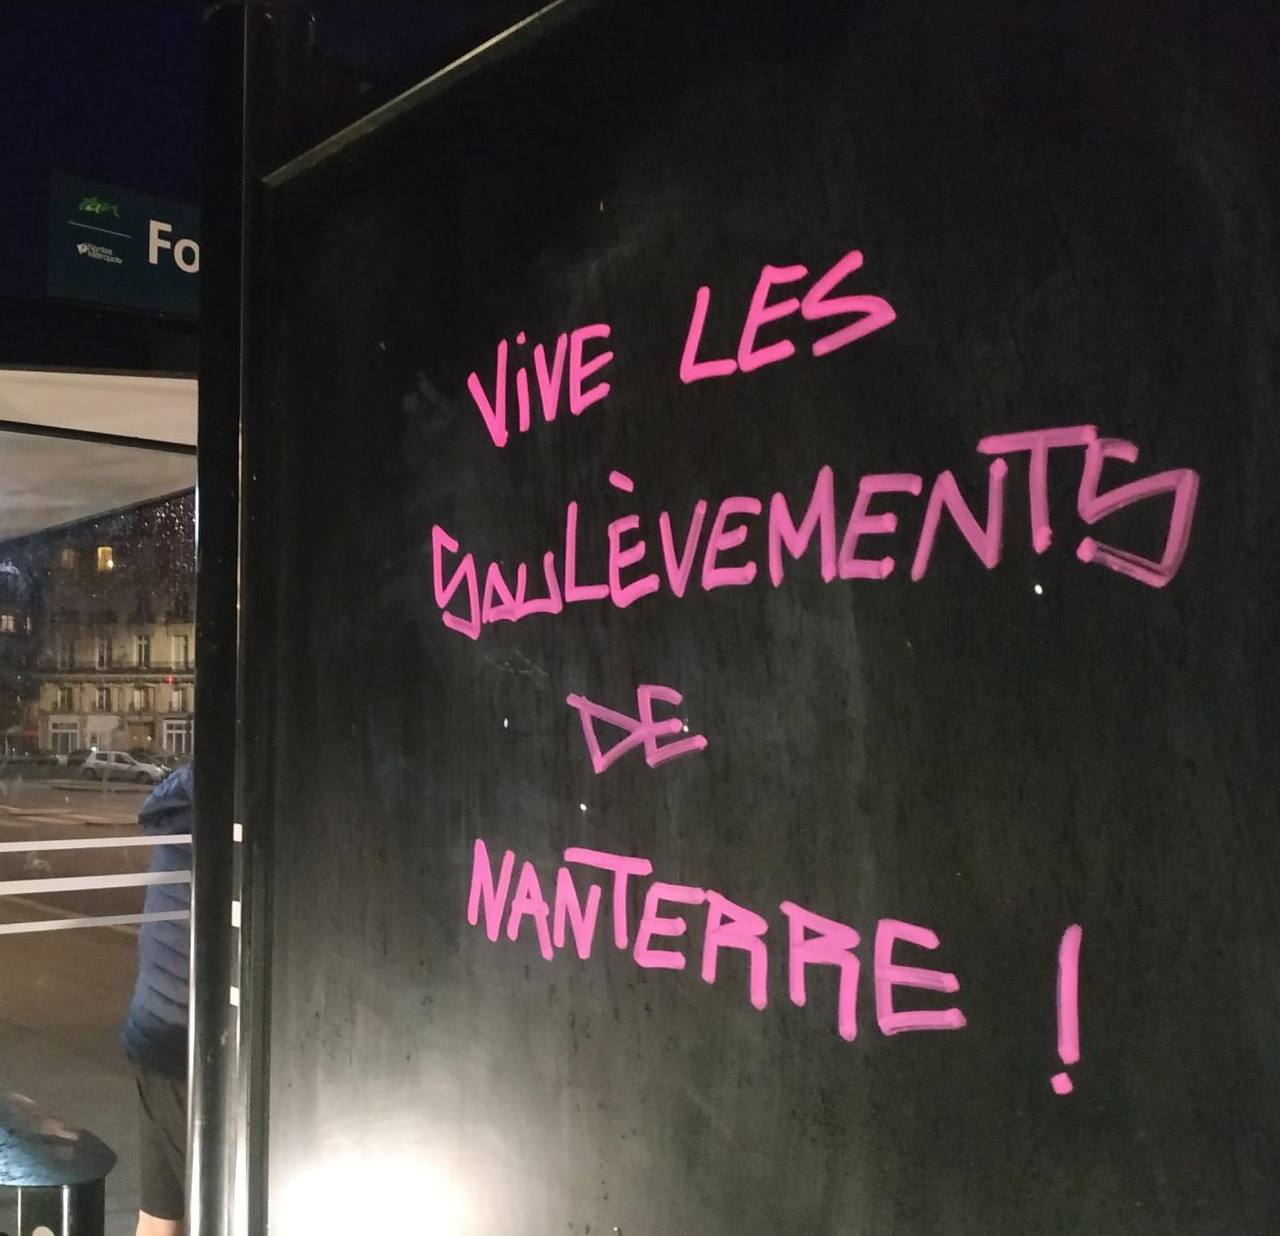 Photo de Contre-Attaque prise à Nantes. Tag rose sur un mur noir : "Vive les Soulèvements de Nanterre".